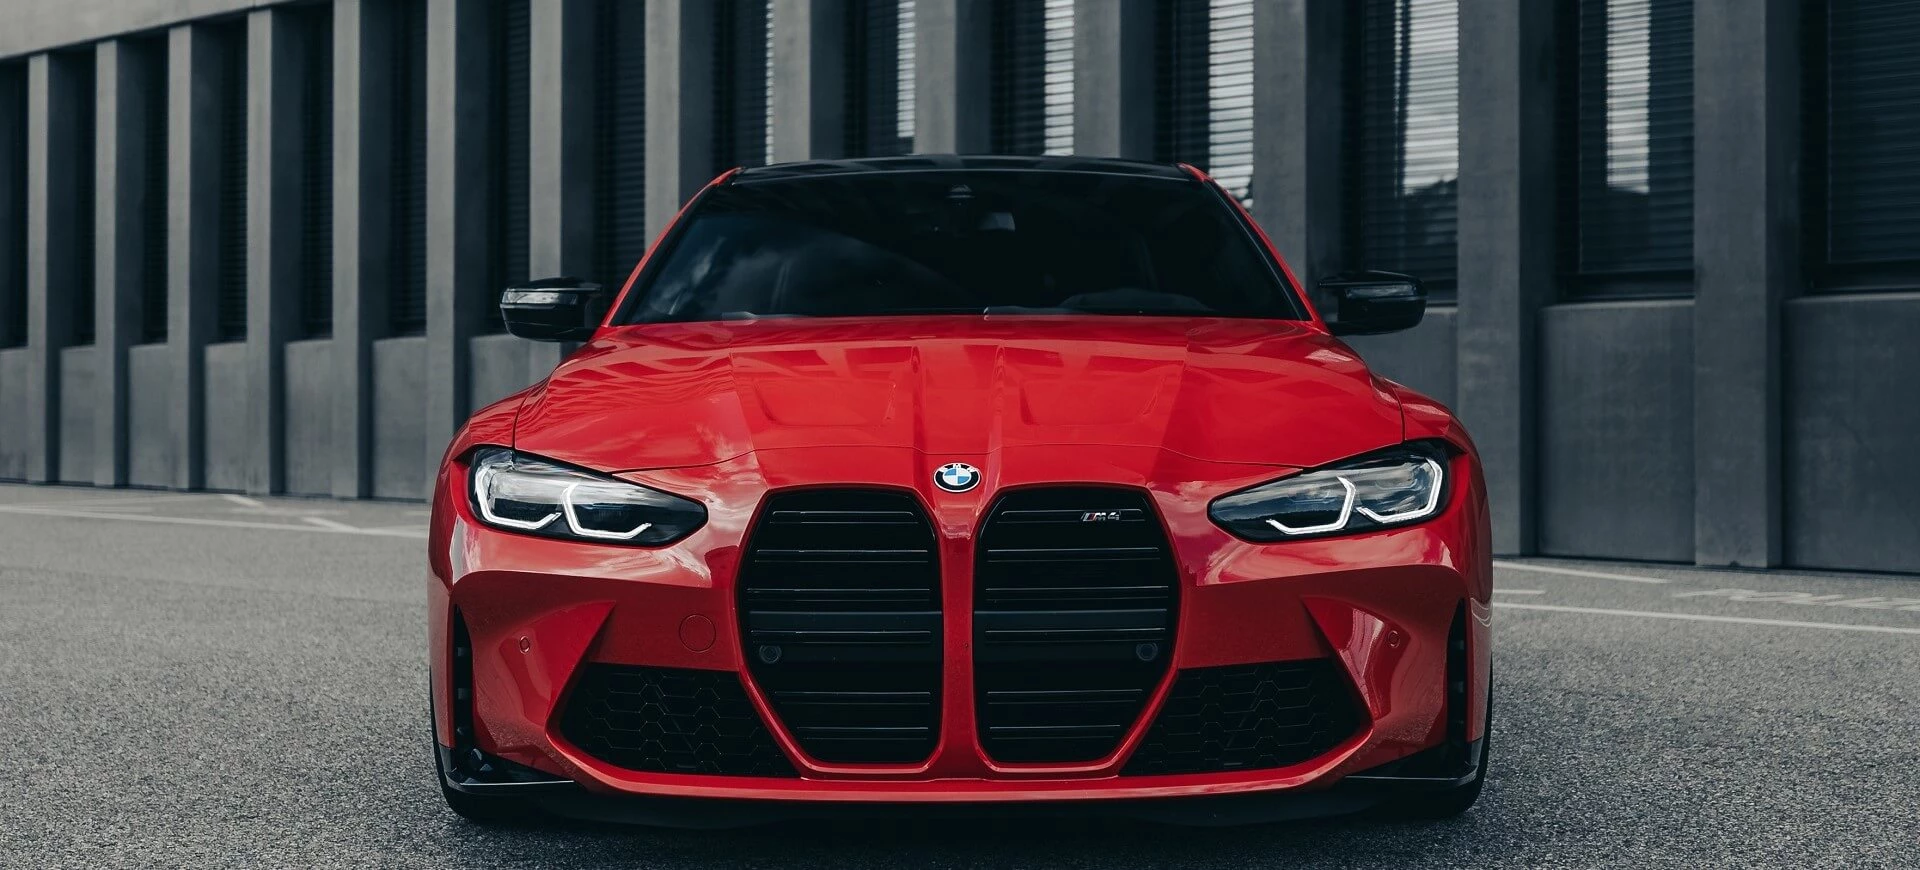 سيارة BMW M4 باللون الأحمر